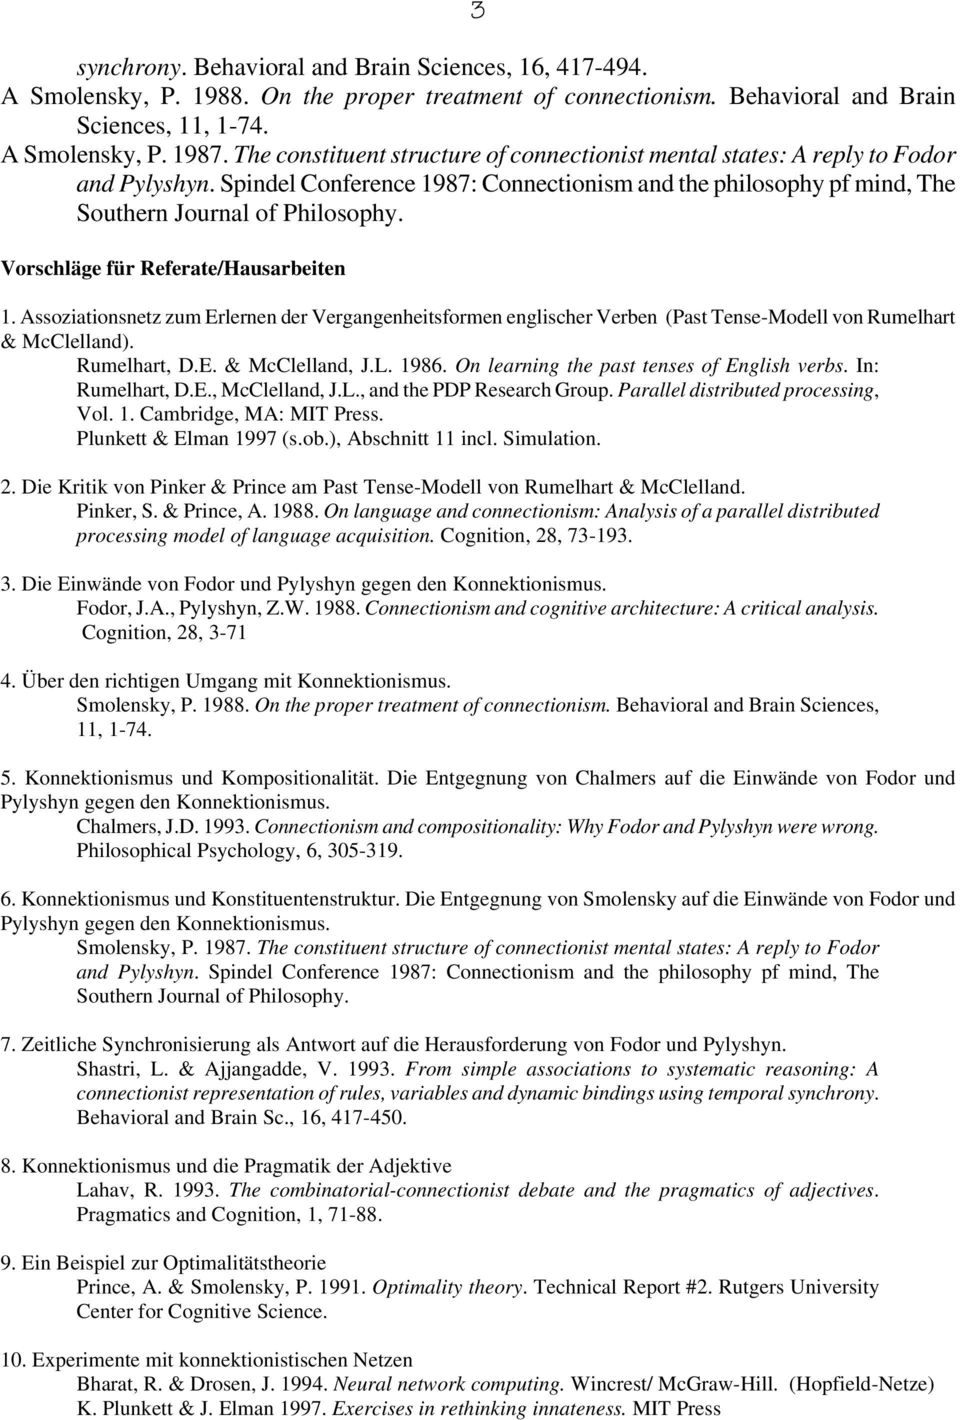 Vorschläge für Referate/Hausarbeiten 1. Assoziationsnetz zum Erlernen der Vergangenheitsformen englischer Verben (Past Tense-Modell von Rumelhart & McClelland). Rumelhart, D.E. & McClelland, J.L.